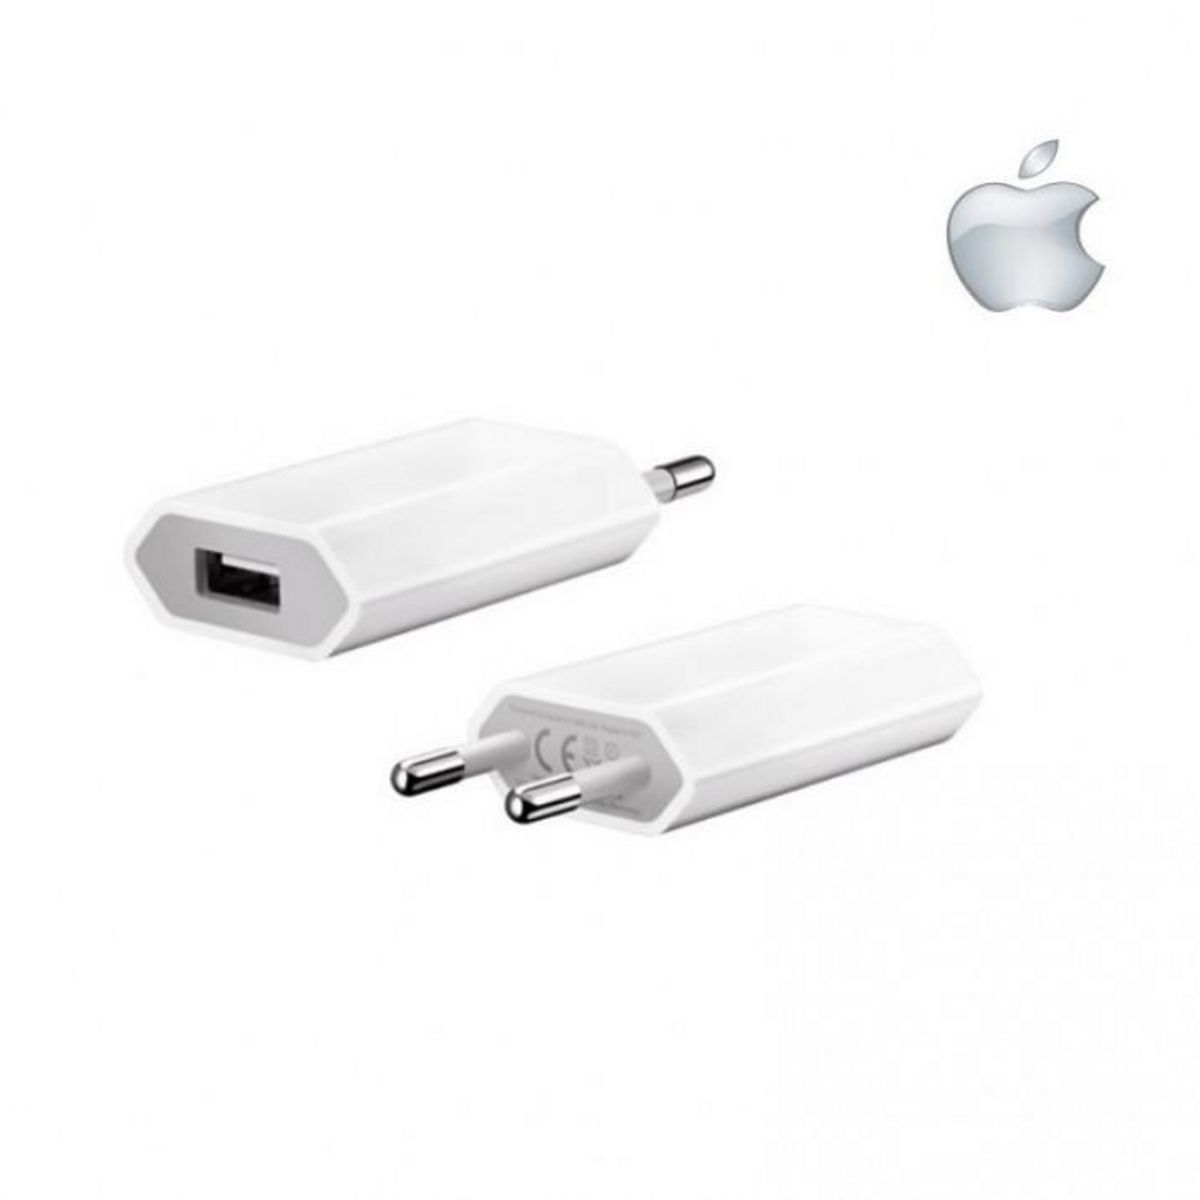  Adaptateur secteur pour Apple iPhone 8/ 8 PLUS origine apple